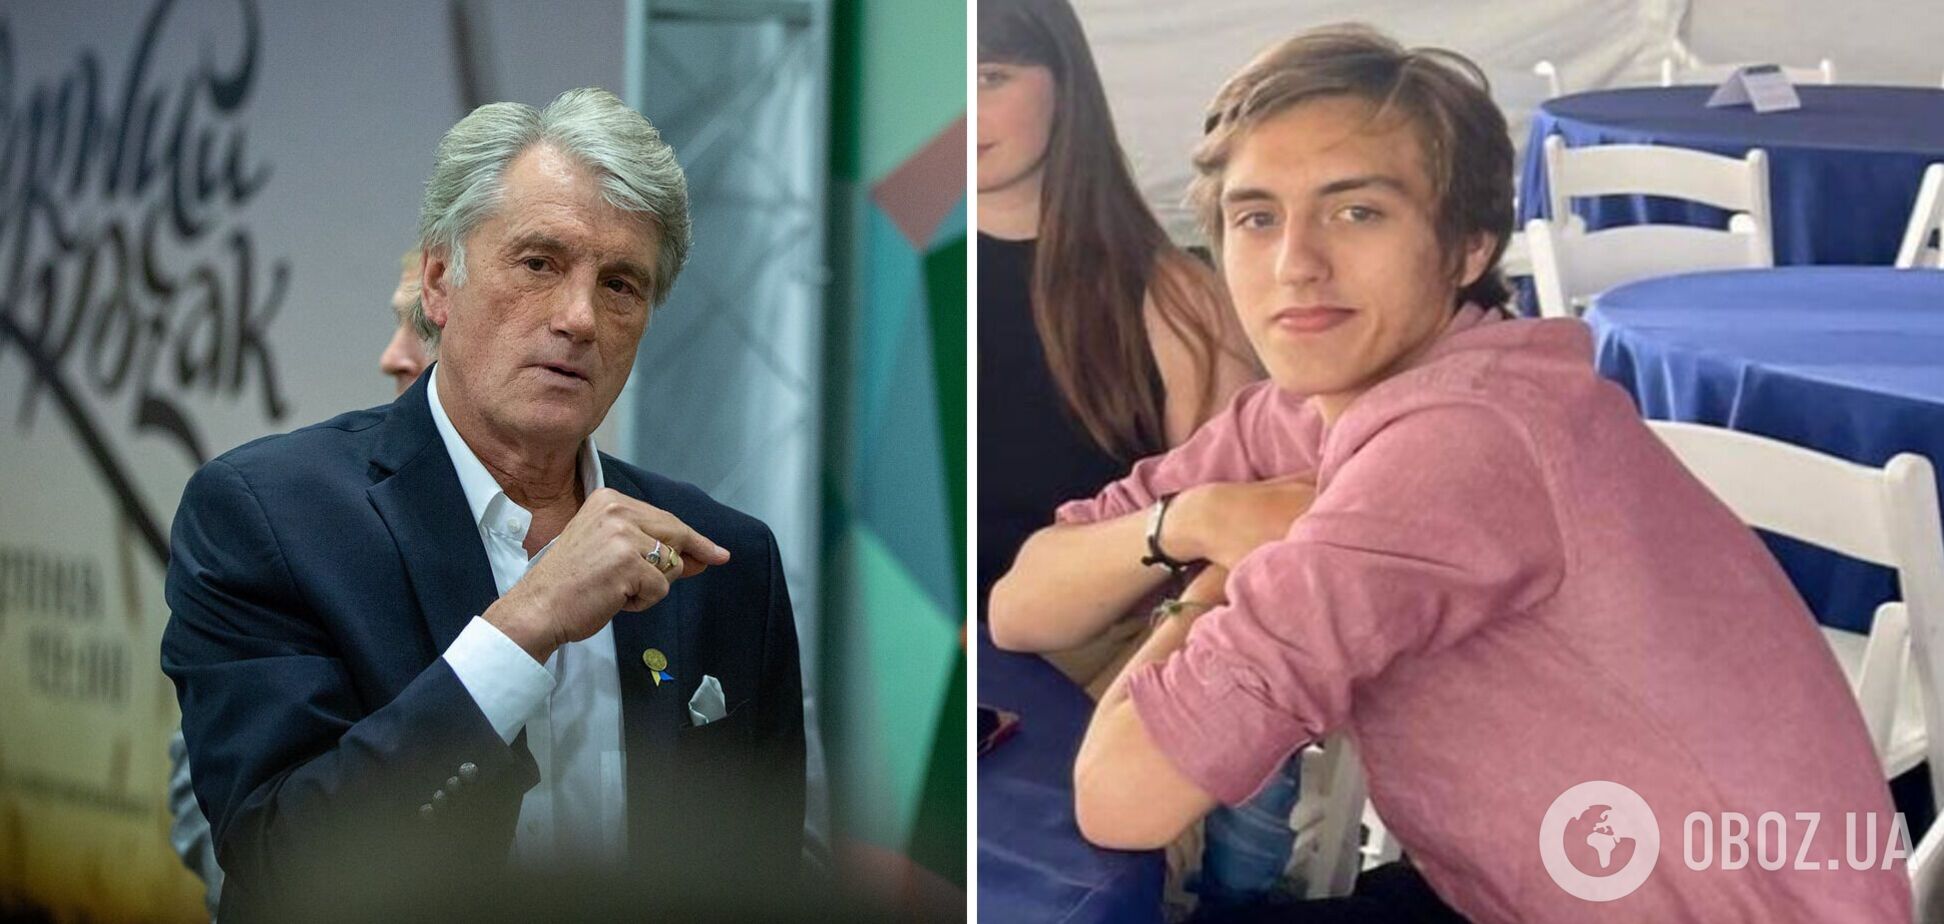 'Это первый университет в мире': Ющенко рассказал об обучении своего сына в вузе США